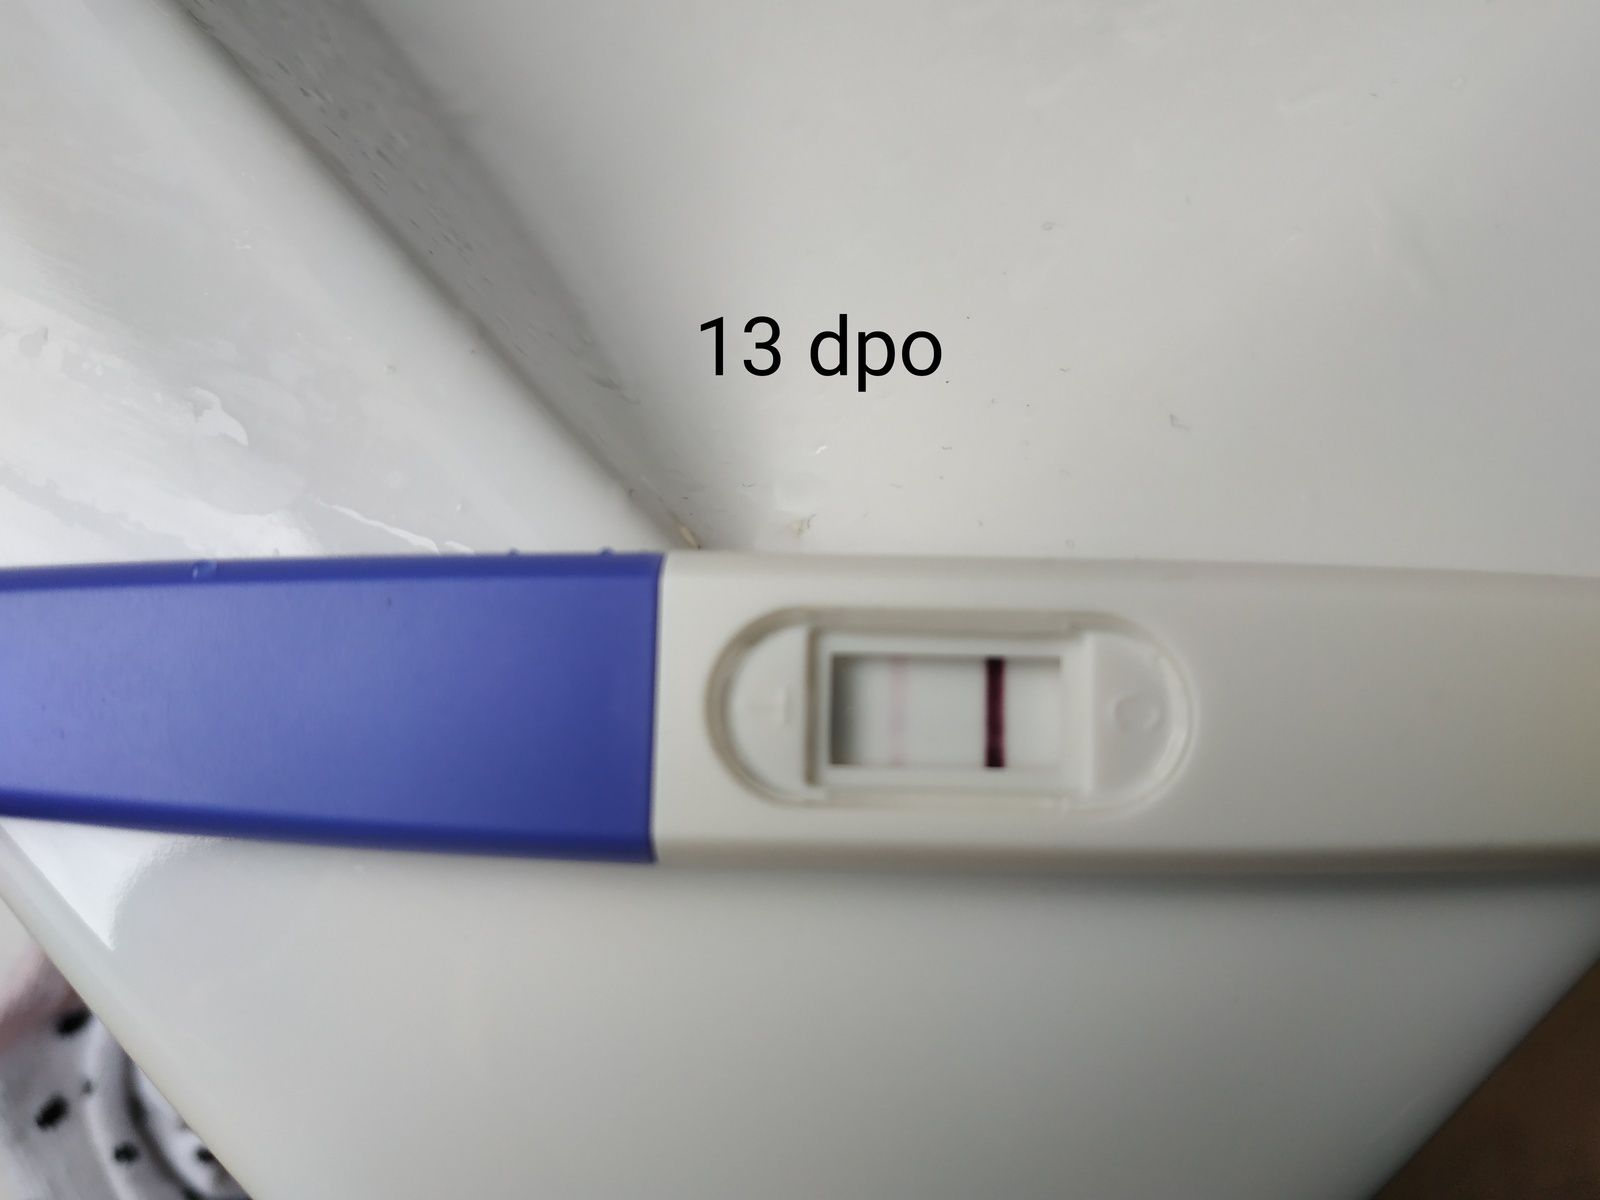 Un test de grossesse positif à 8dpo ? - My Sweet little baby et ...